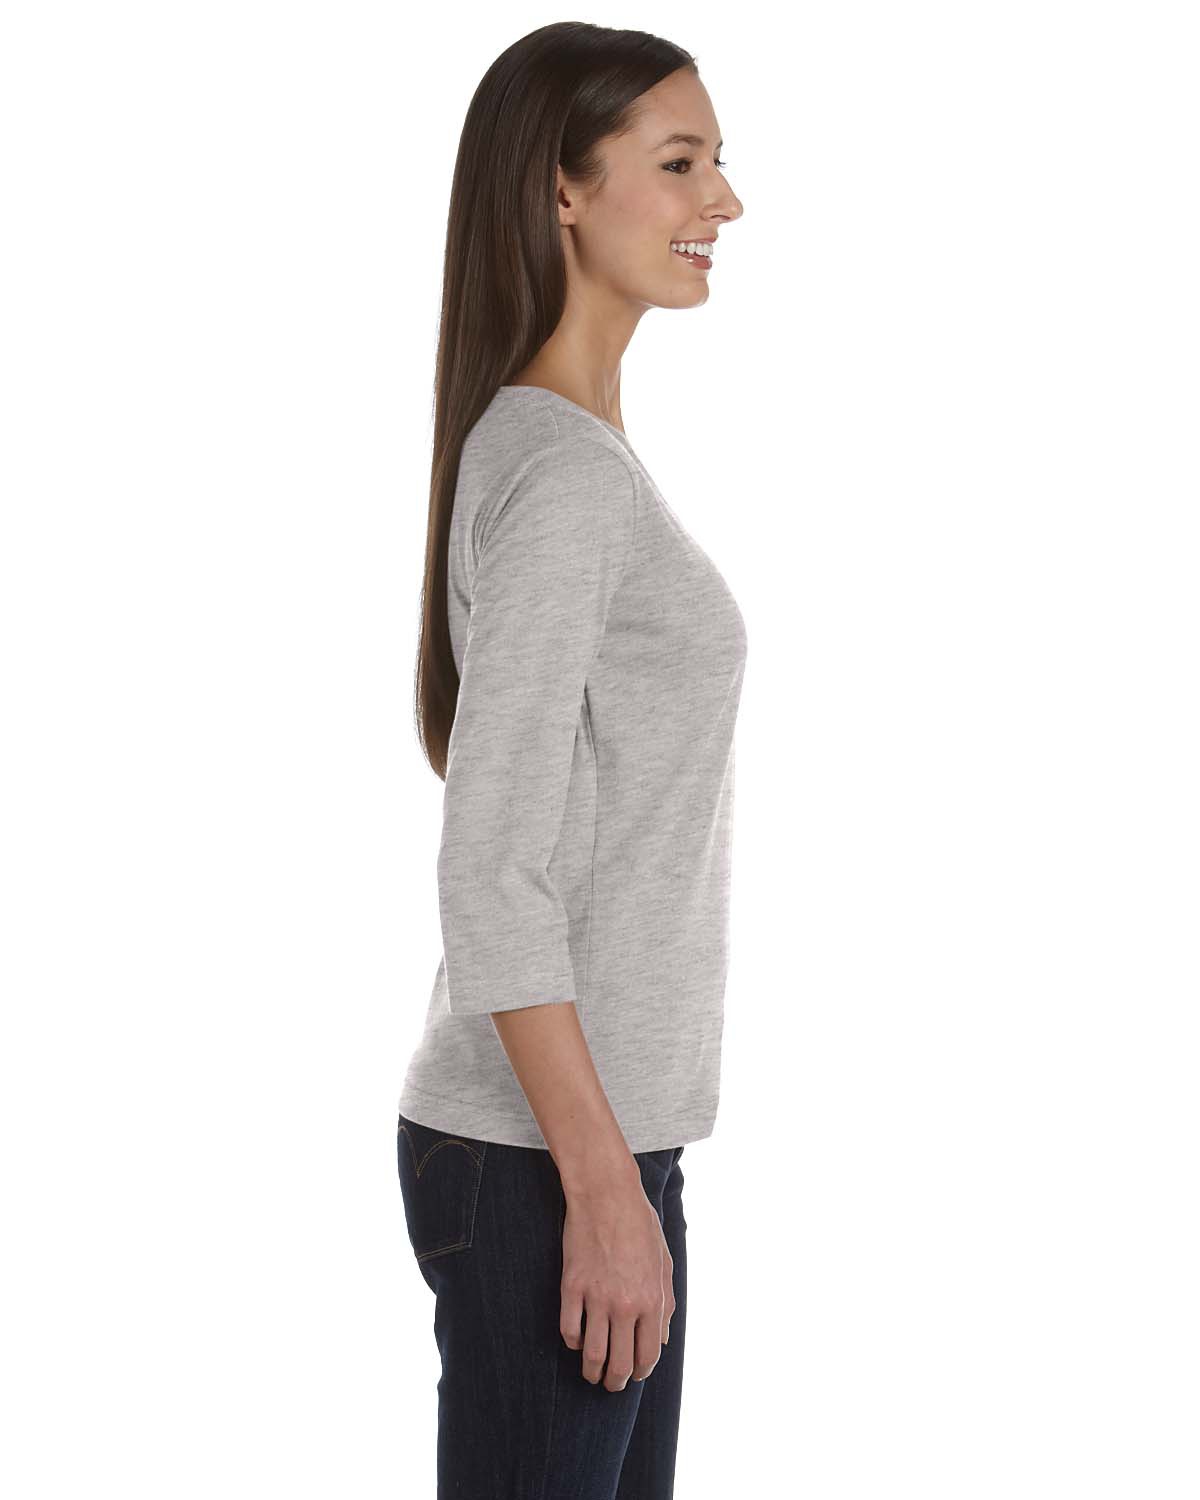 'LAT 3577 Ladies' 3/4-Sleeve Premium Jersey T-Shirt'